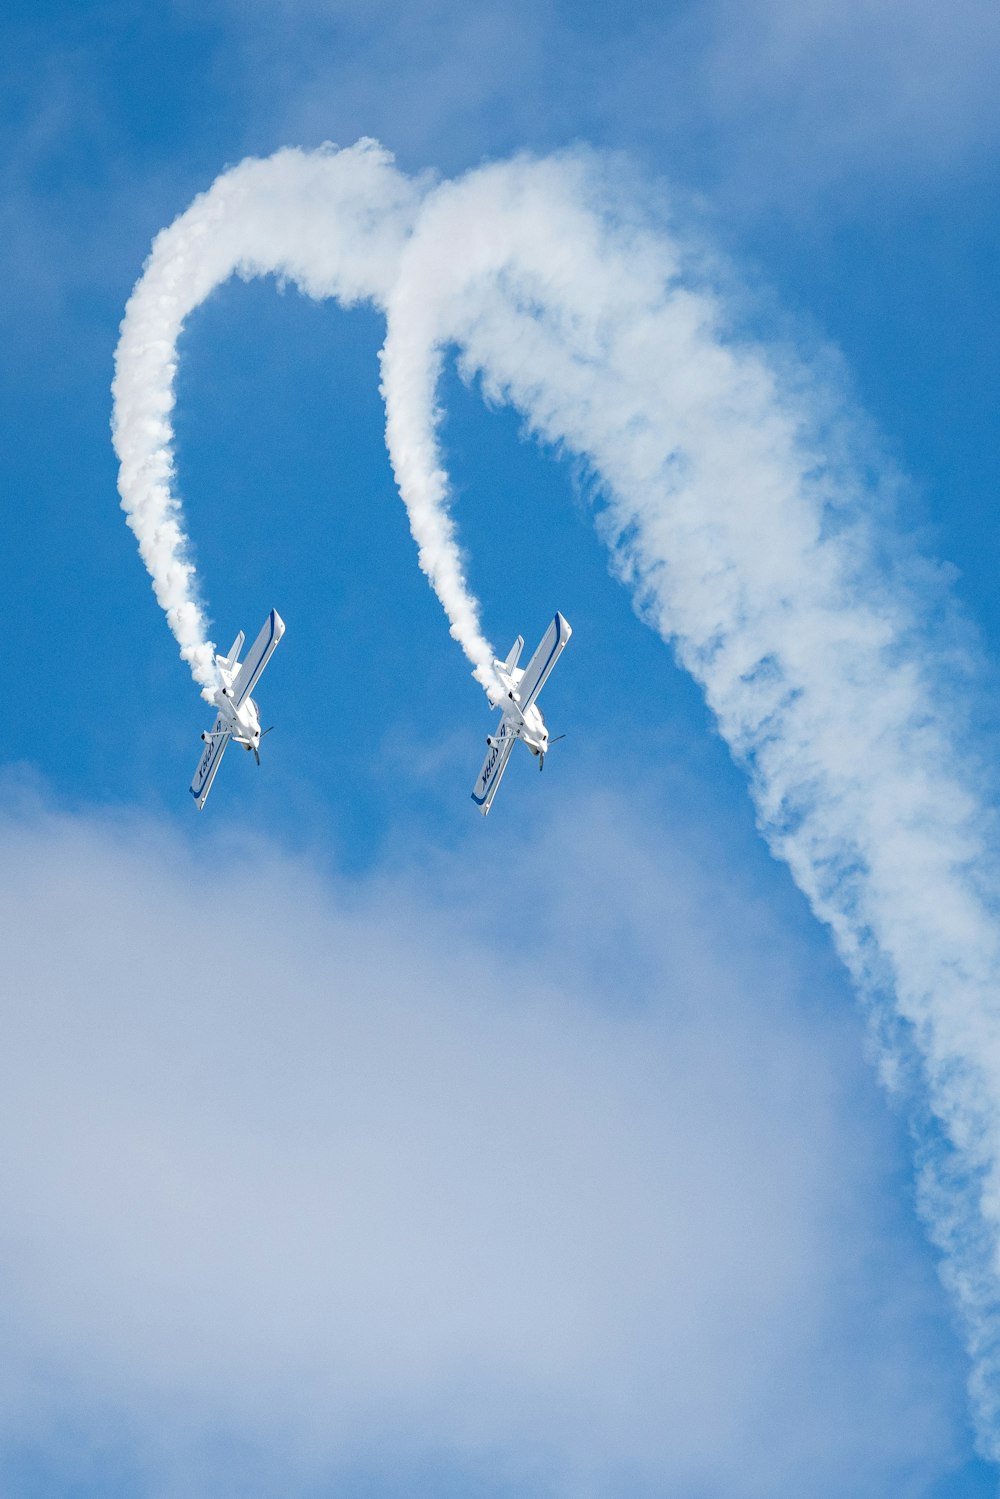 Zwei weiße Verkehrsflugzeuge unter blauem Himmel